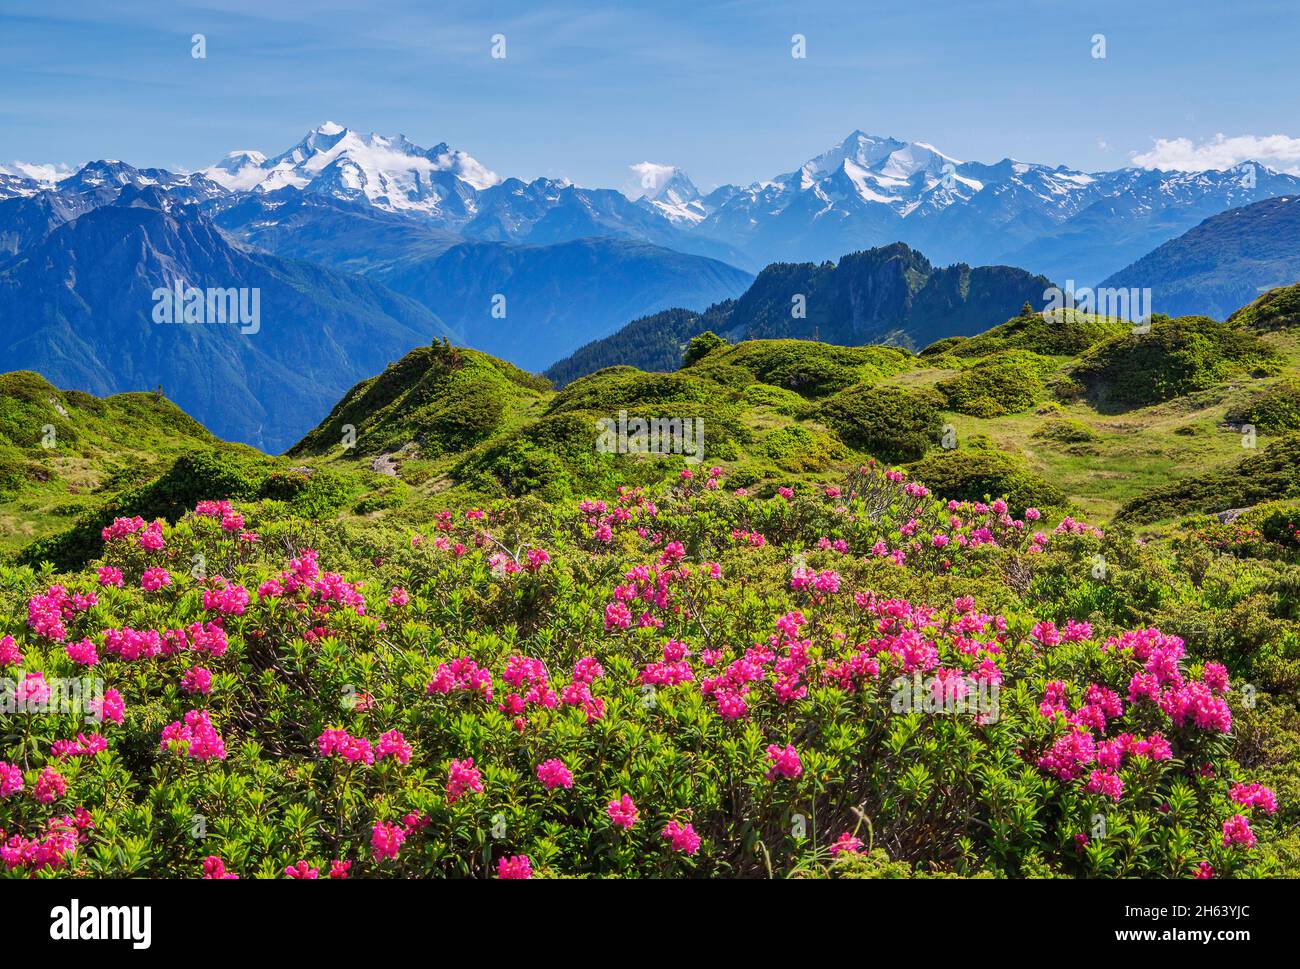 rose alpine fleurira avec un panorama du sommet de dom 4545m, matterhorn 4478m et weisshorn 4505m de la région d'aletsch zone de randonnée, riederalp, valais alpes, valais, suisse Banque D'Images